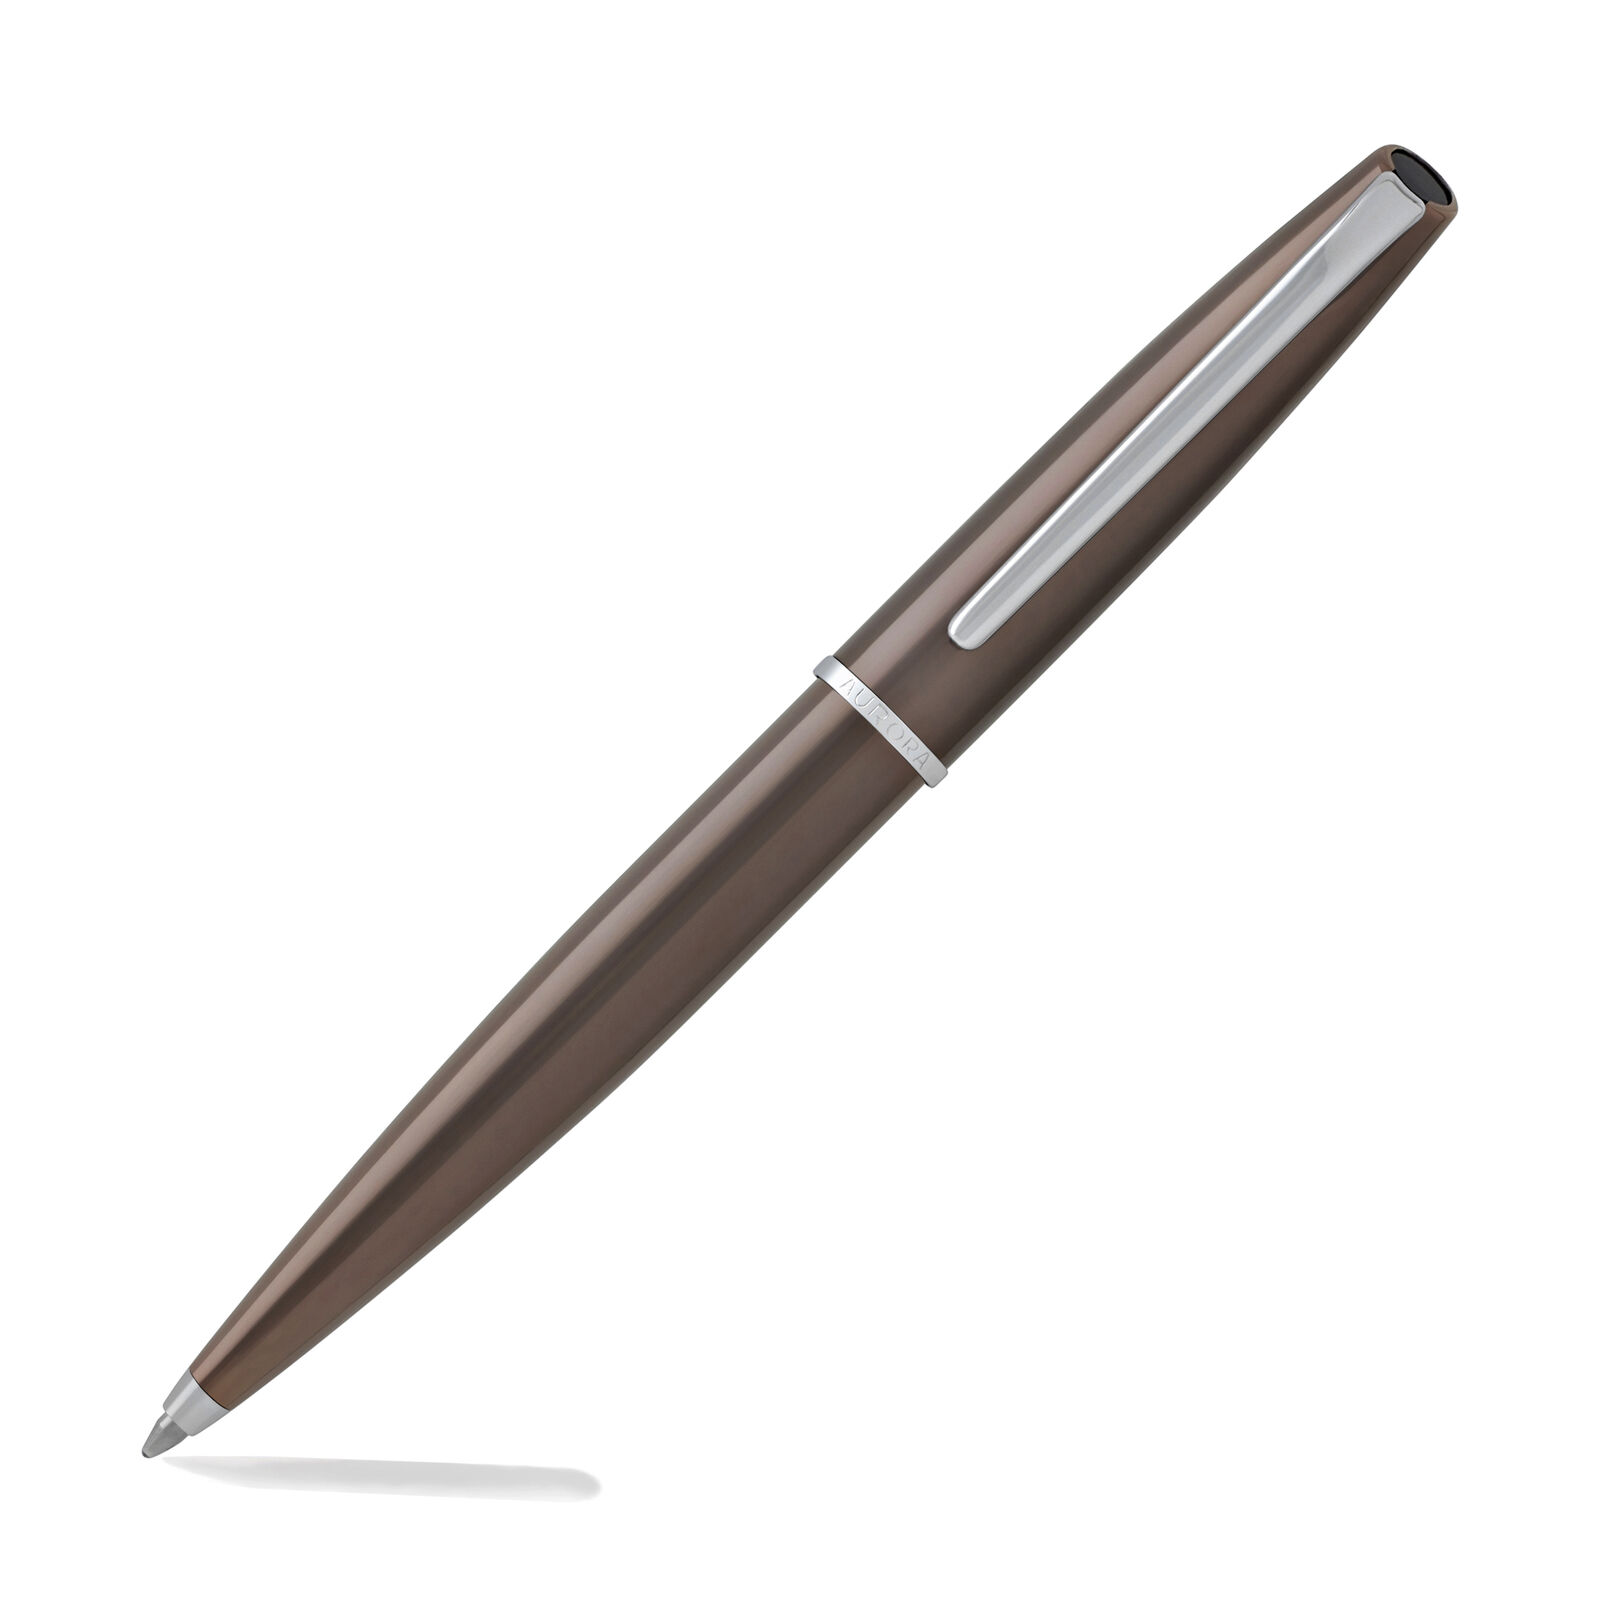 Aurora Style Ballpoint Pen - Bronze PVD - New in Box - E33-BR